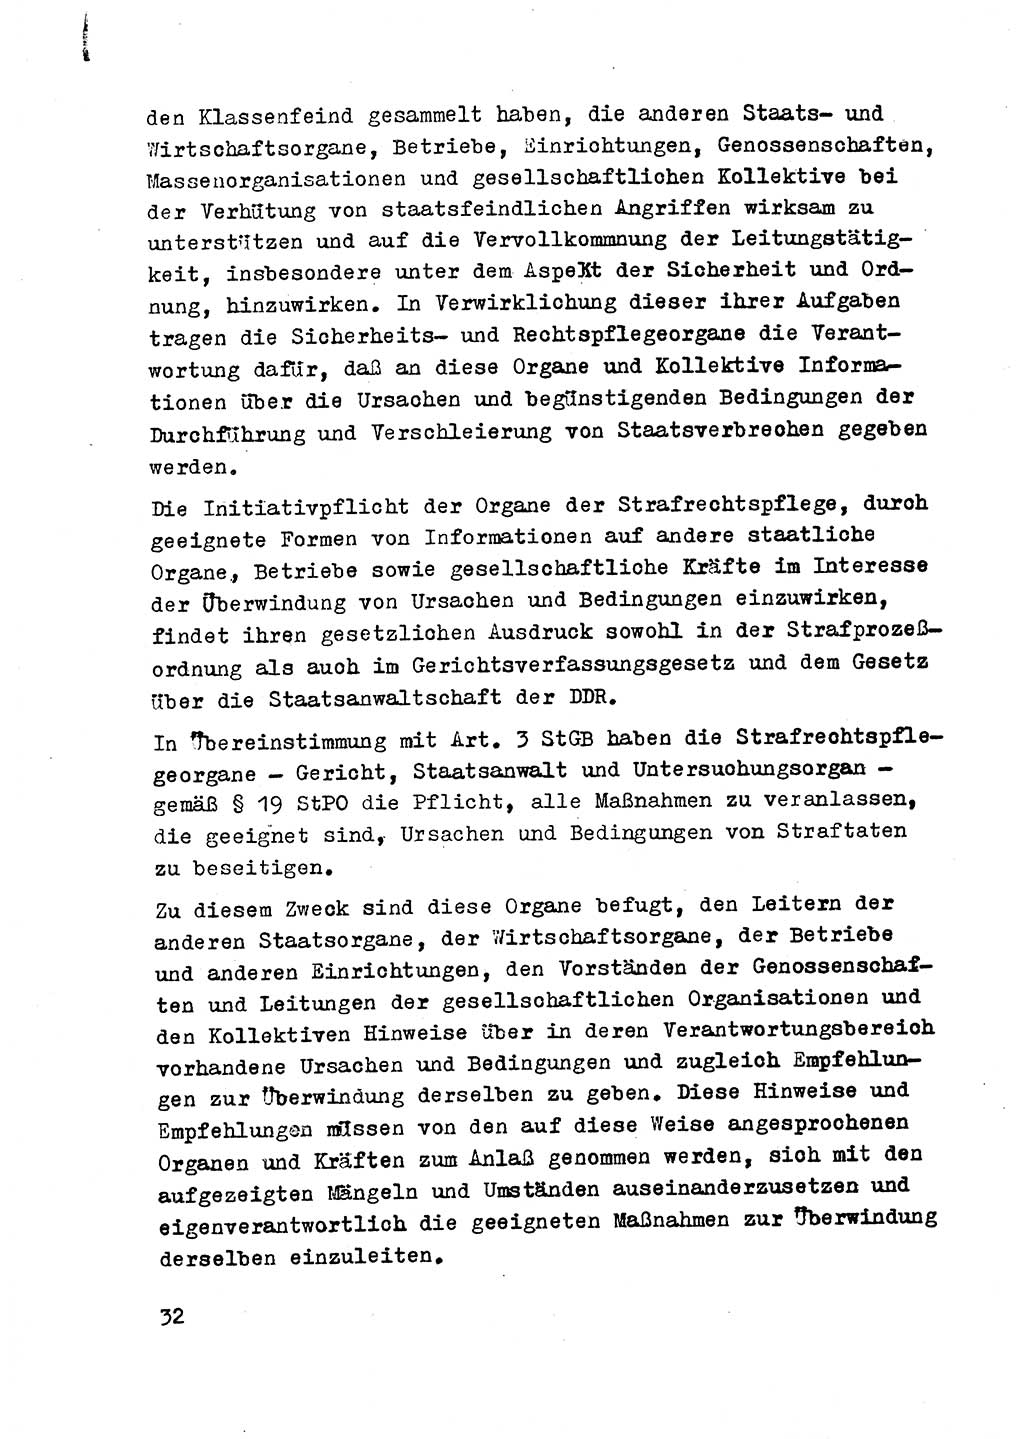 Strafrecht der DDR (Deutsche Demokratische Republik), Besonderer Teil, Lehrmaterial, Heft 2 1969, Seite 32 (Strafr. DDR BT Lehrmat. H. 2 1969, S. 32)